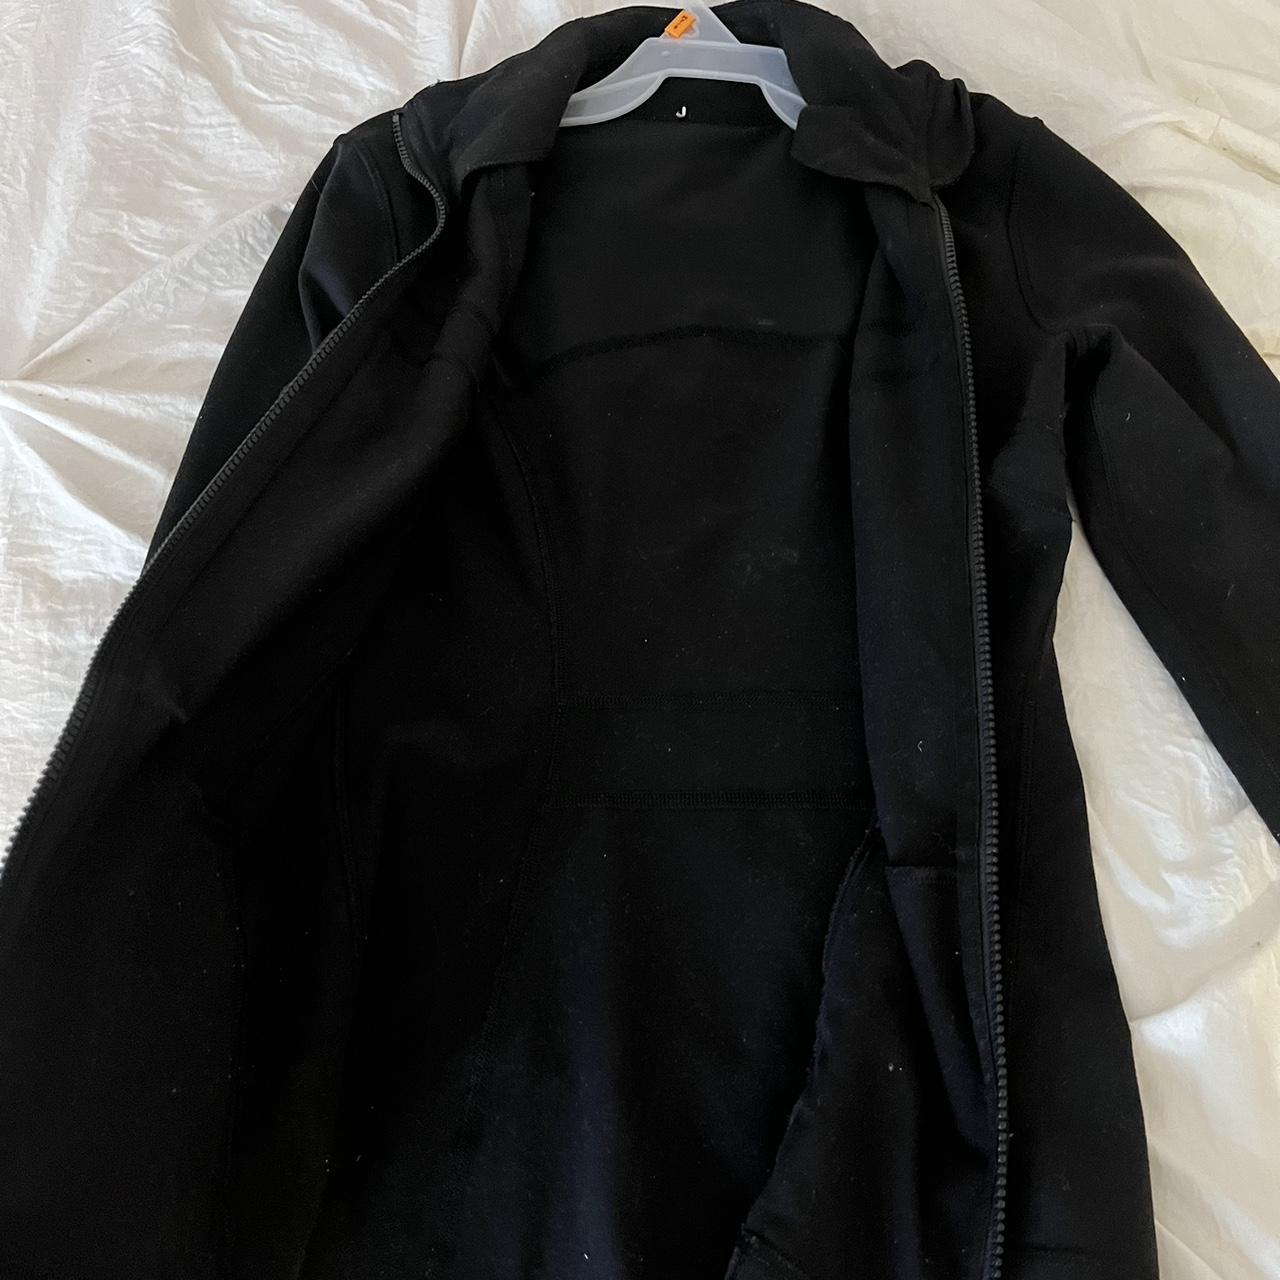 Lululemon black define jacket size 4 got as a gift... - Depop